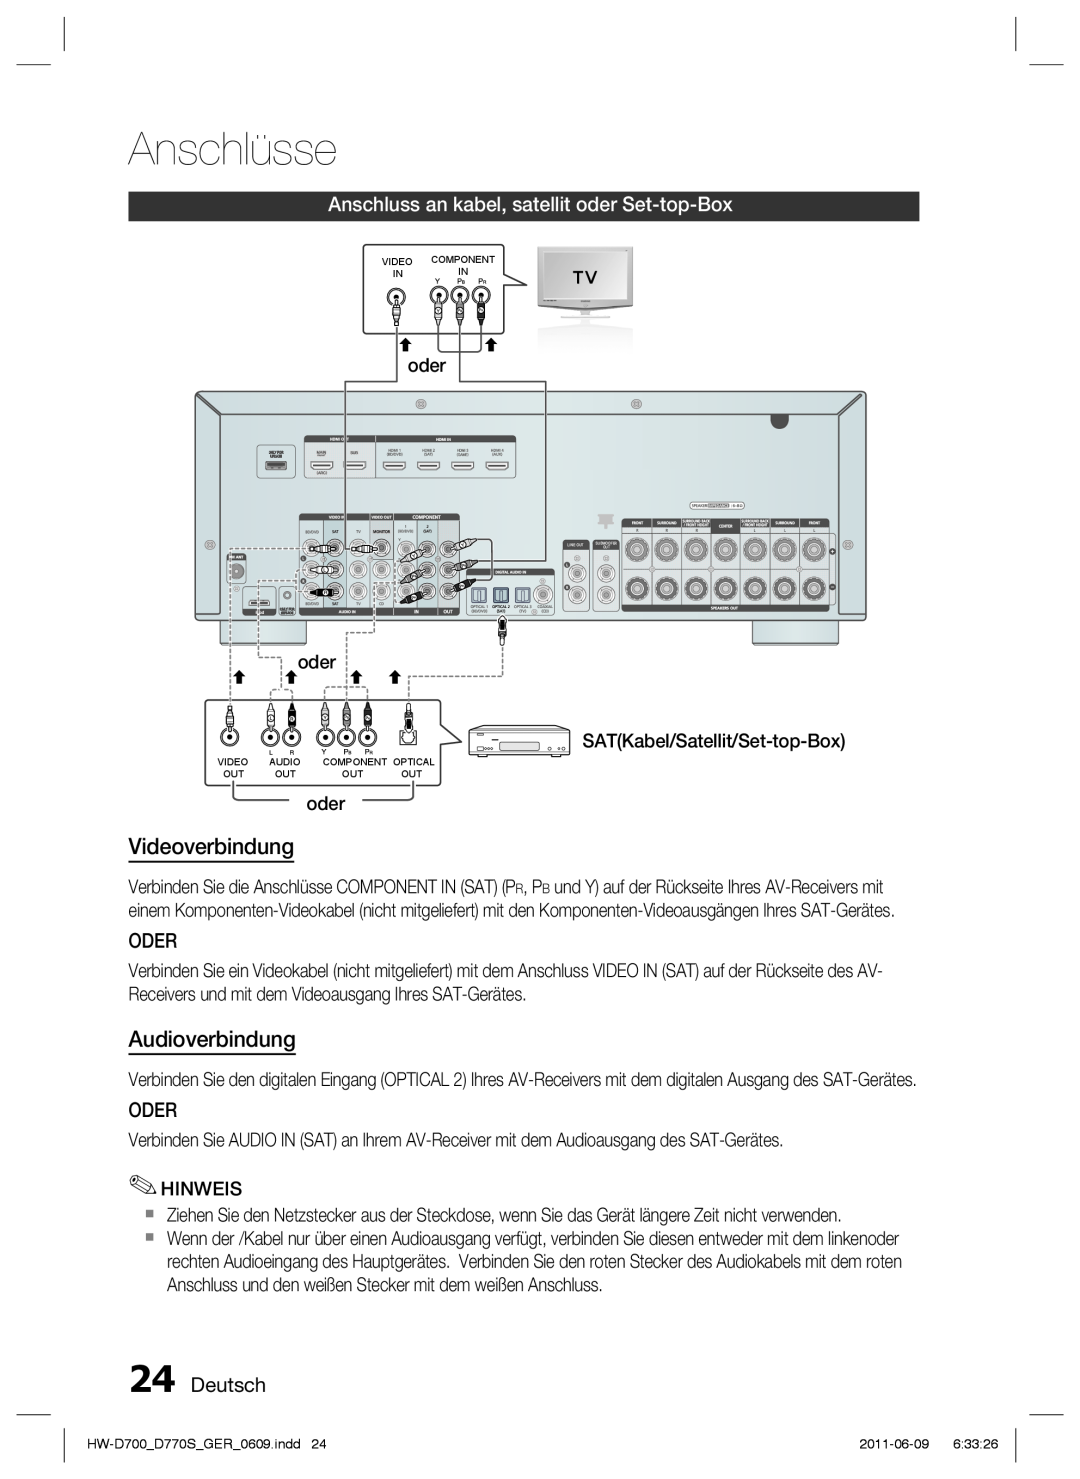 Samsung HW-D770S/EN Anschluss an kabel, satellit oder Set-top-Box, Deutsch, Anschlüsse, Videoverbindung, Audioverbindung 